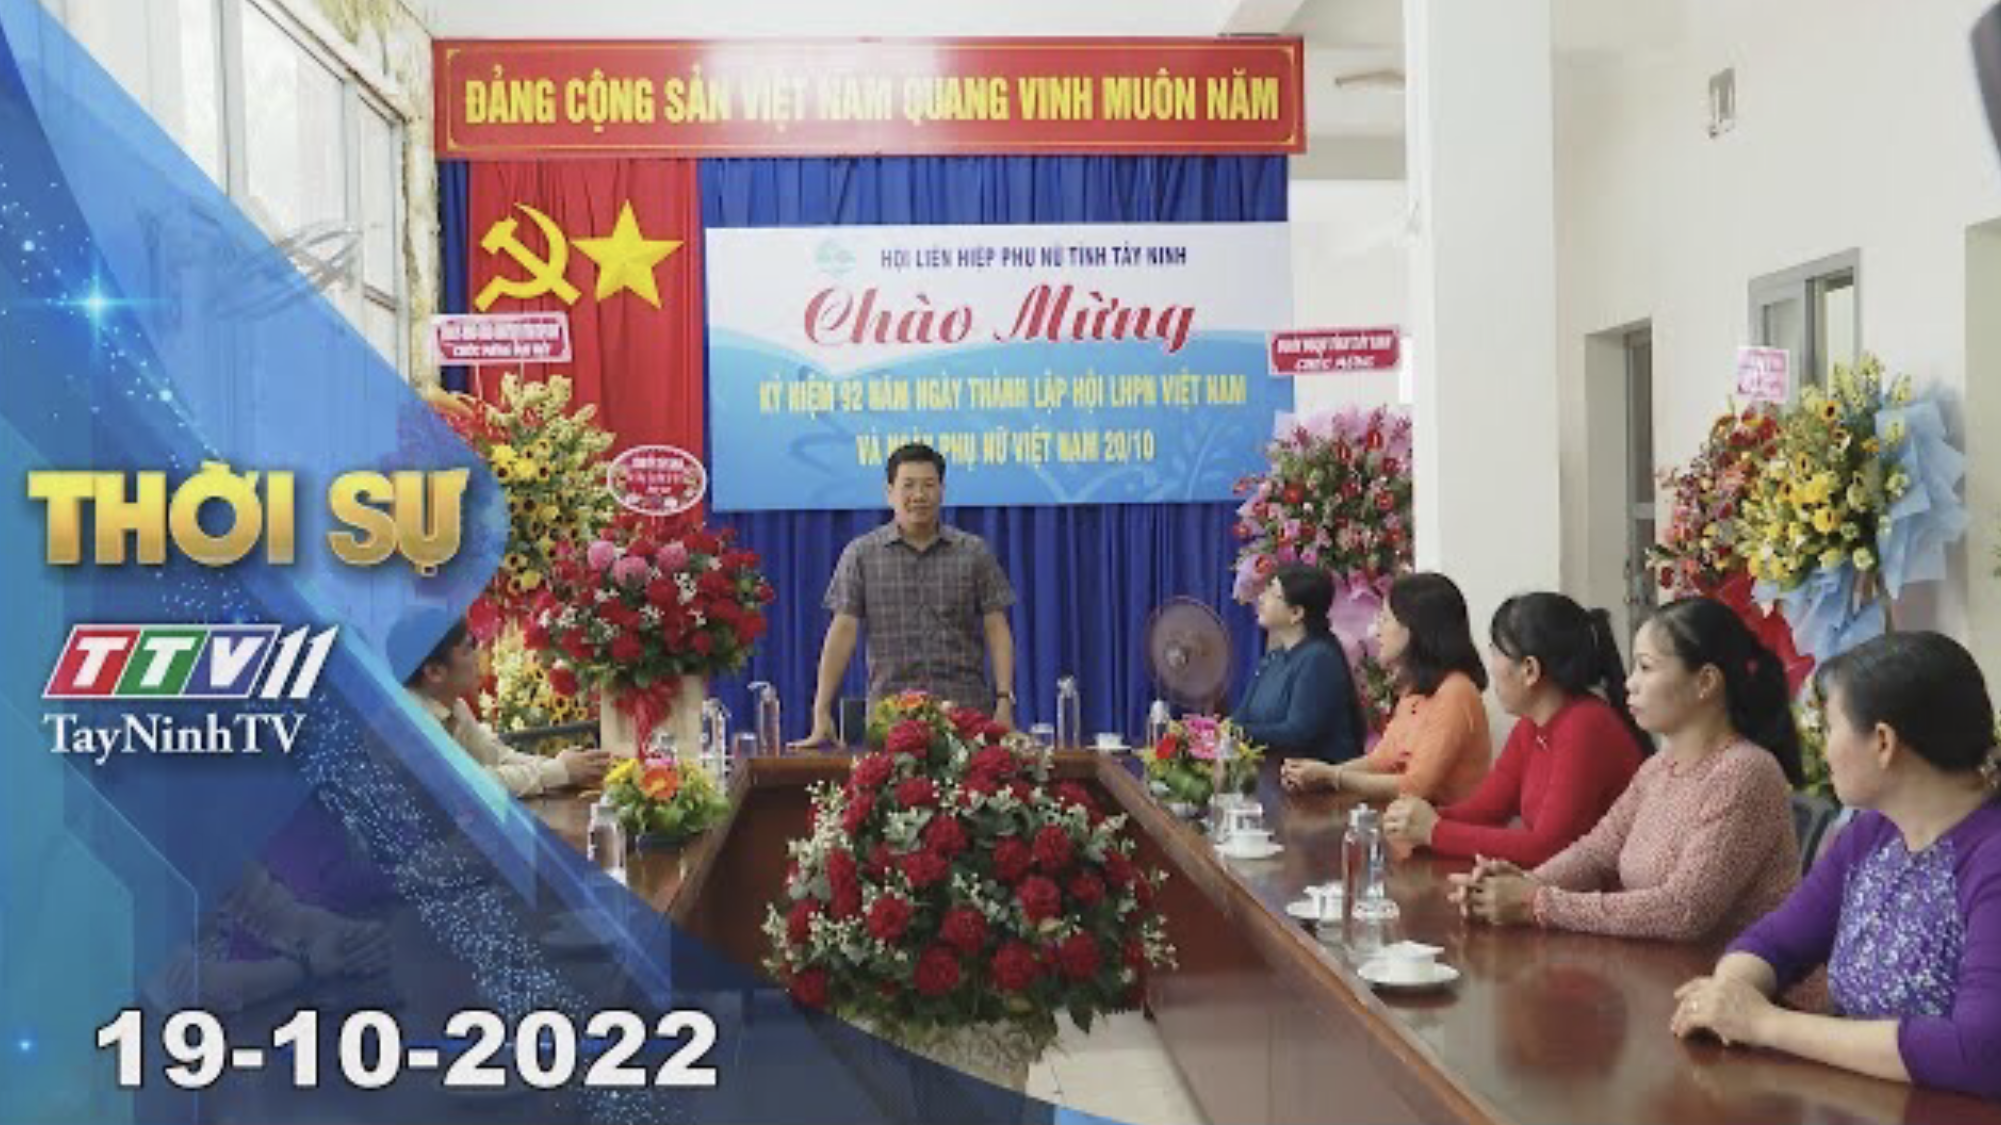 Thời sự Tây Ninh 19-10-2022 | Tin tức hôm nay | TayNinhTV